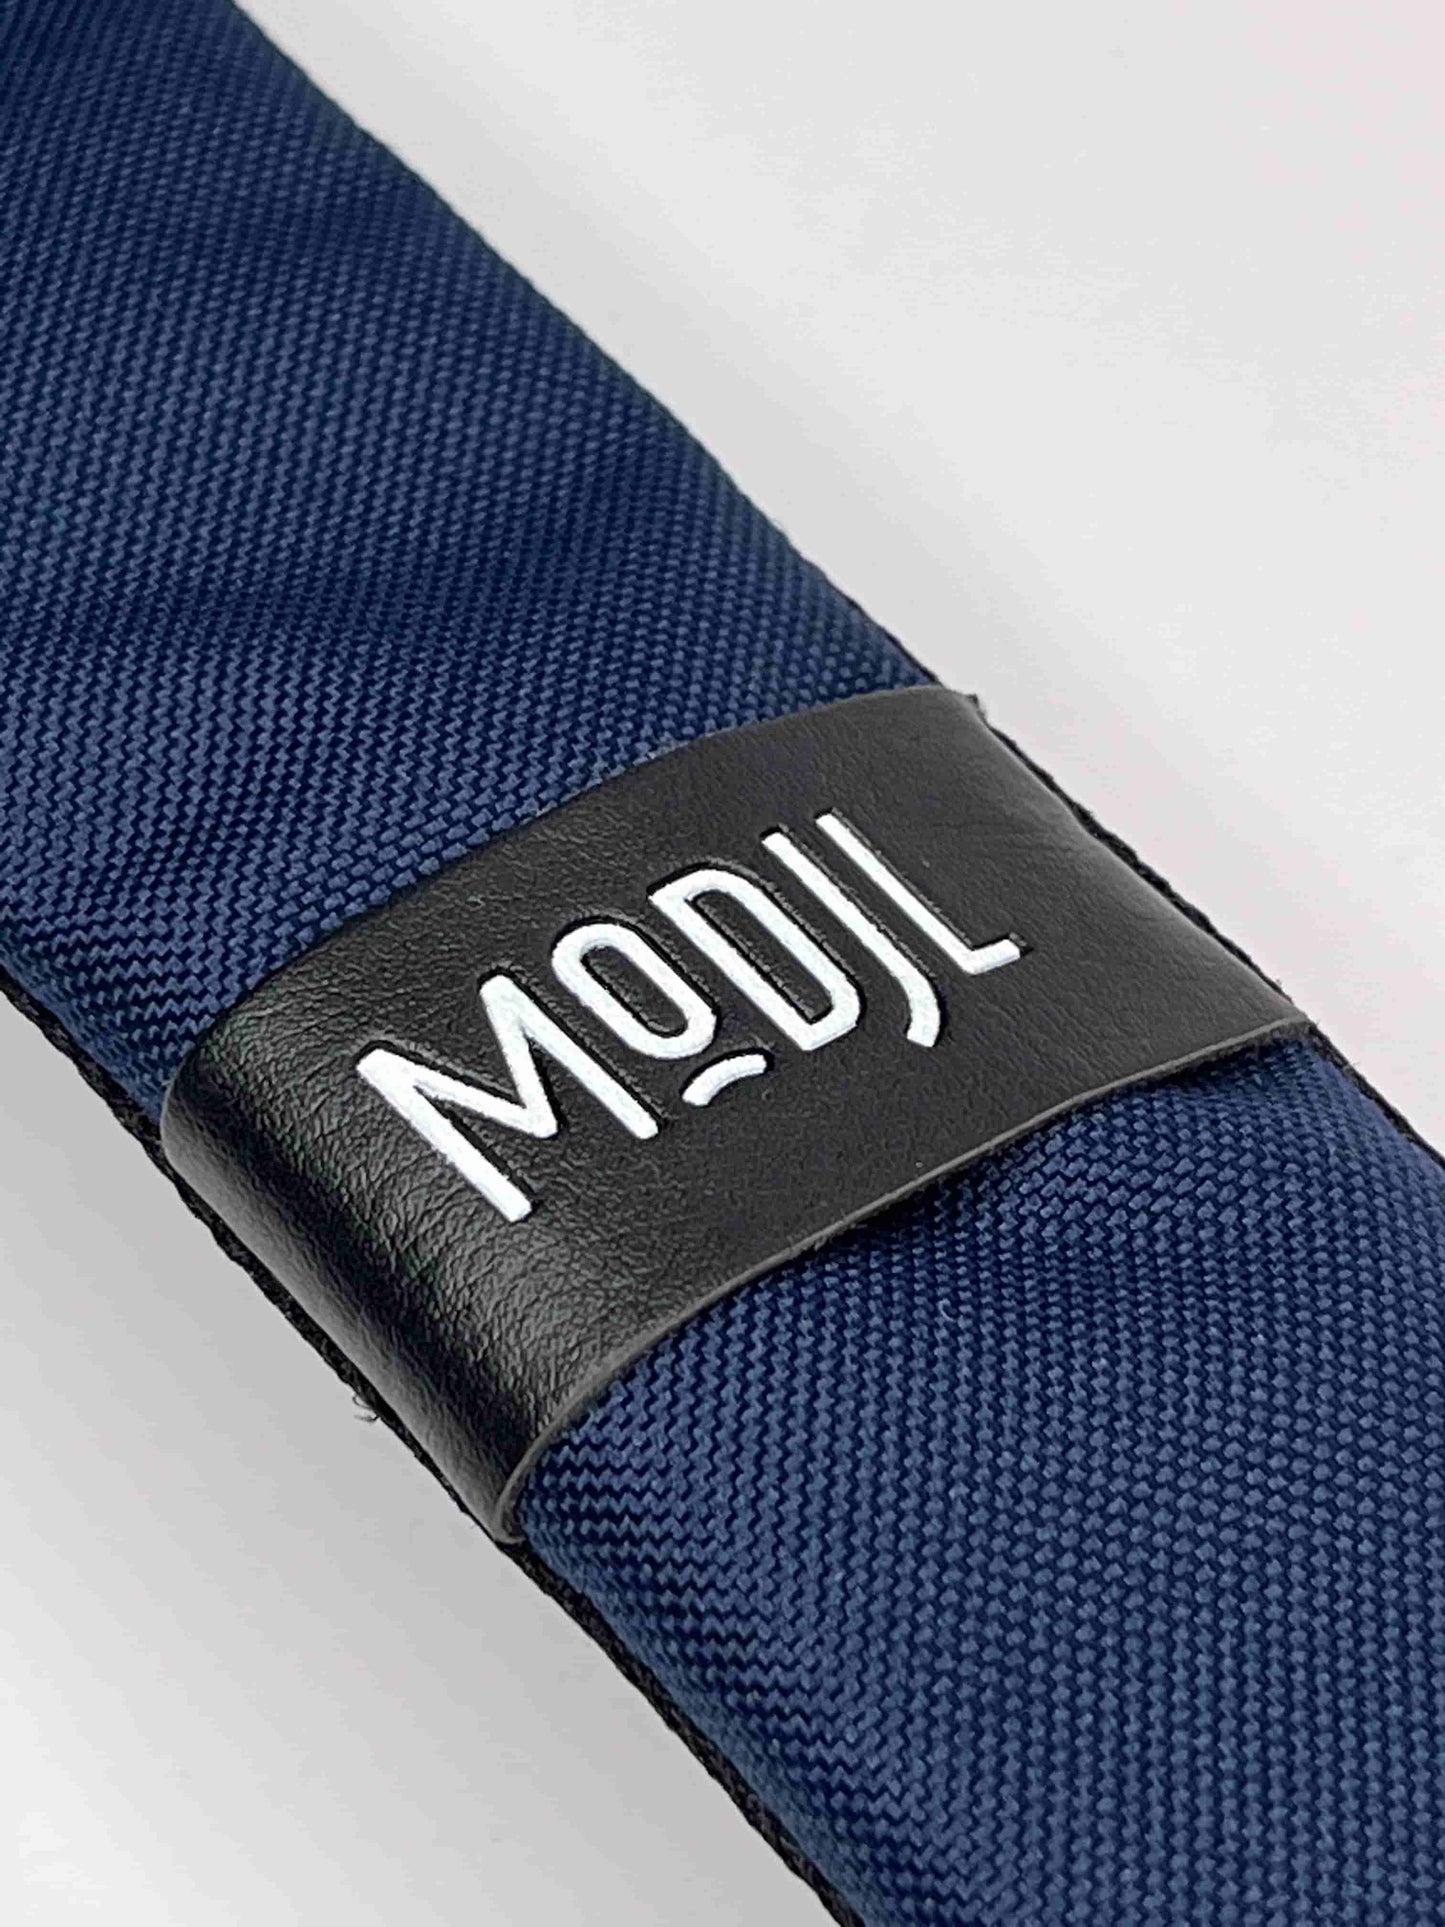 the-shoulder-strap-modjl-modular-backpack--detail-logo